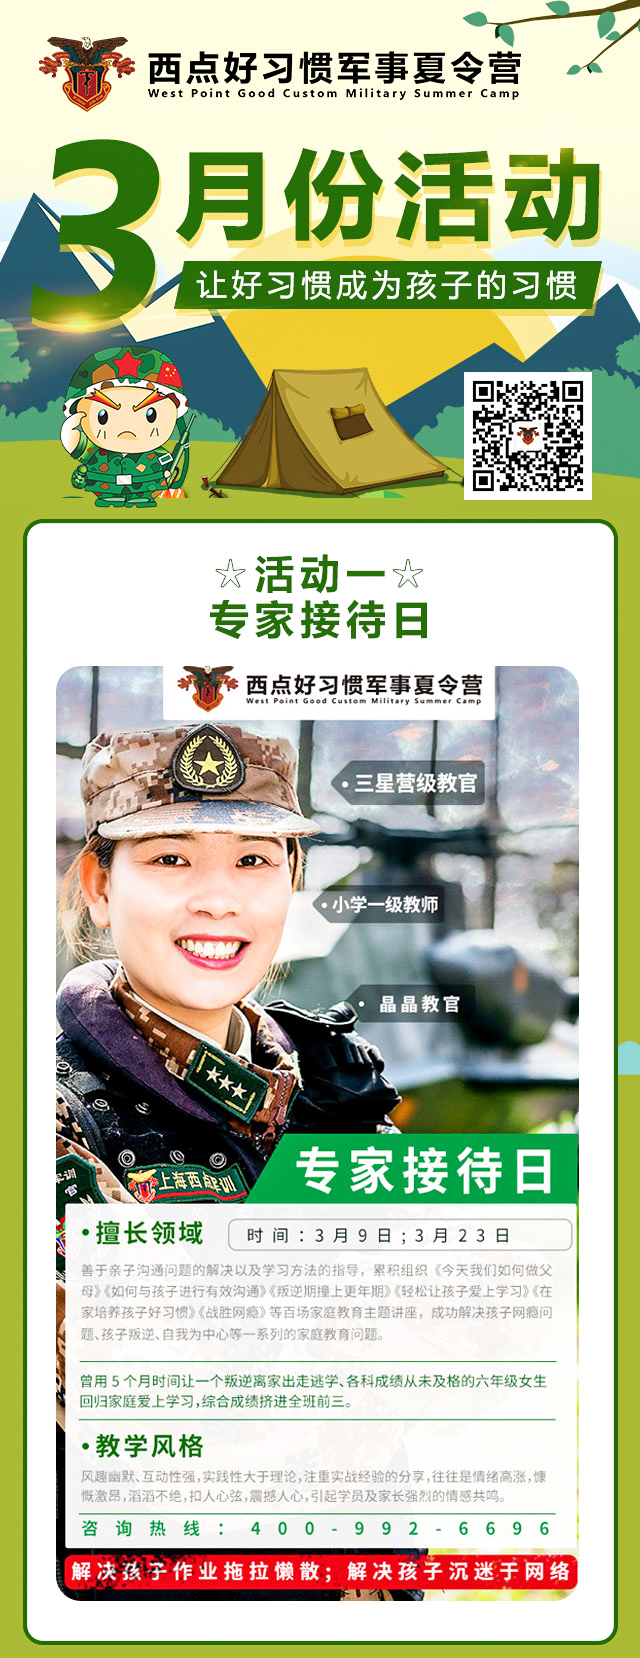 上海西点军事夏令营3月活动大合集